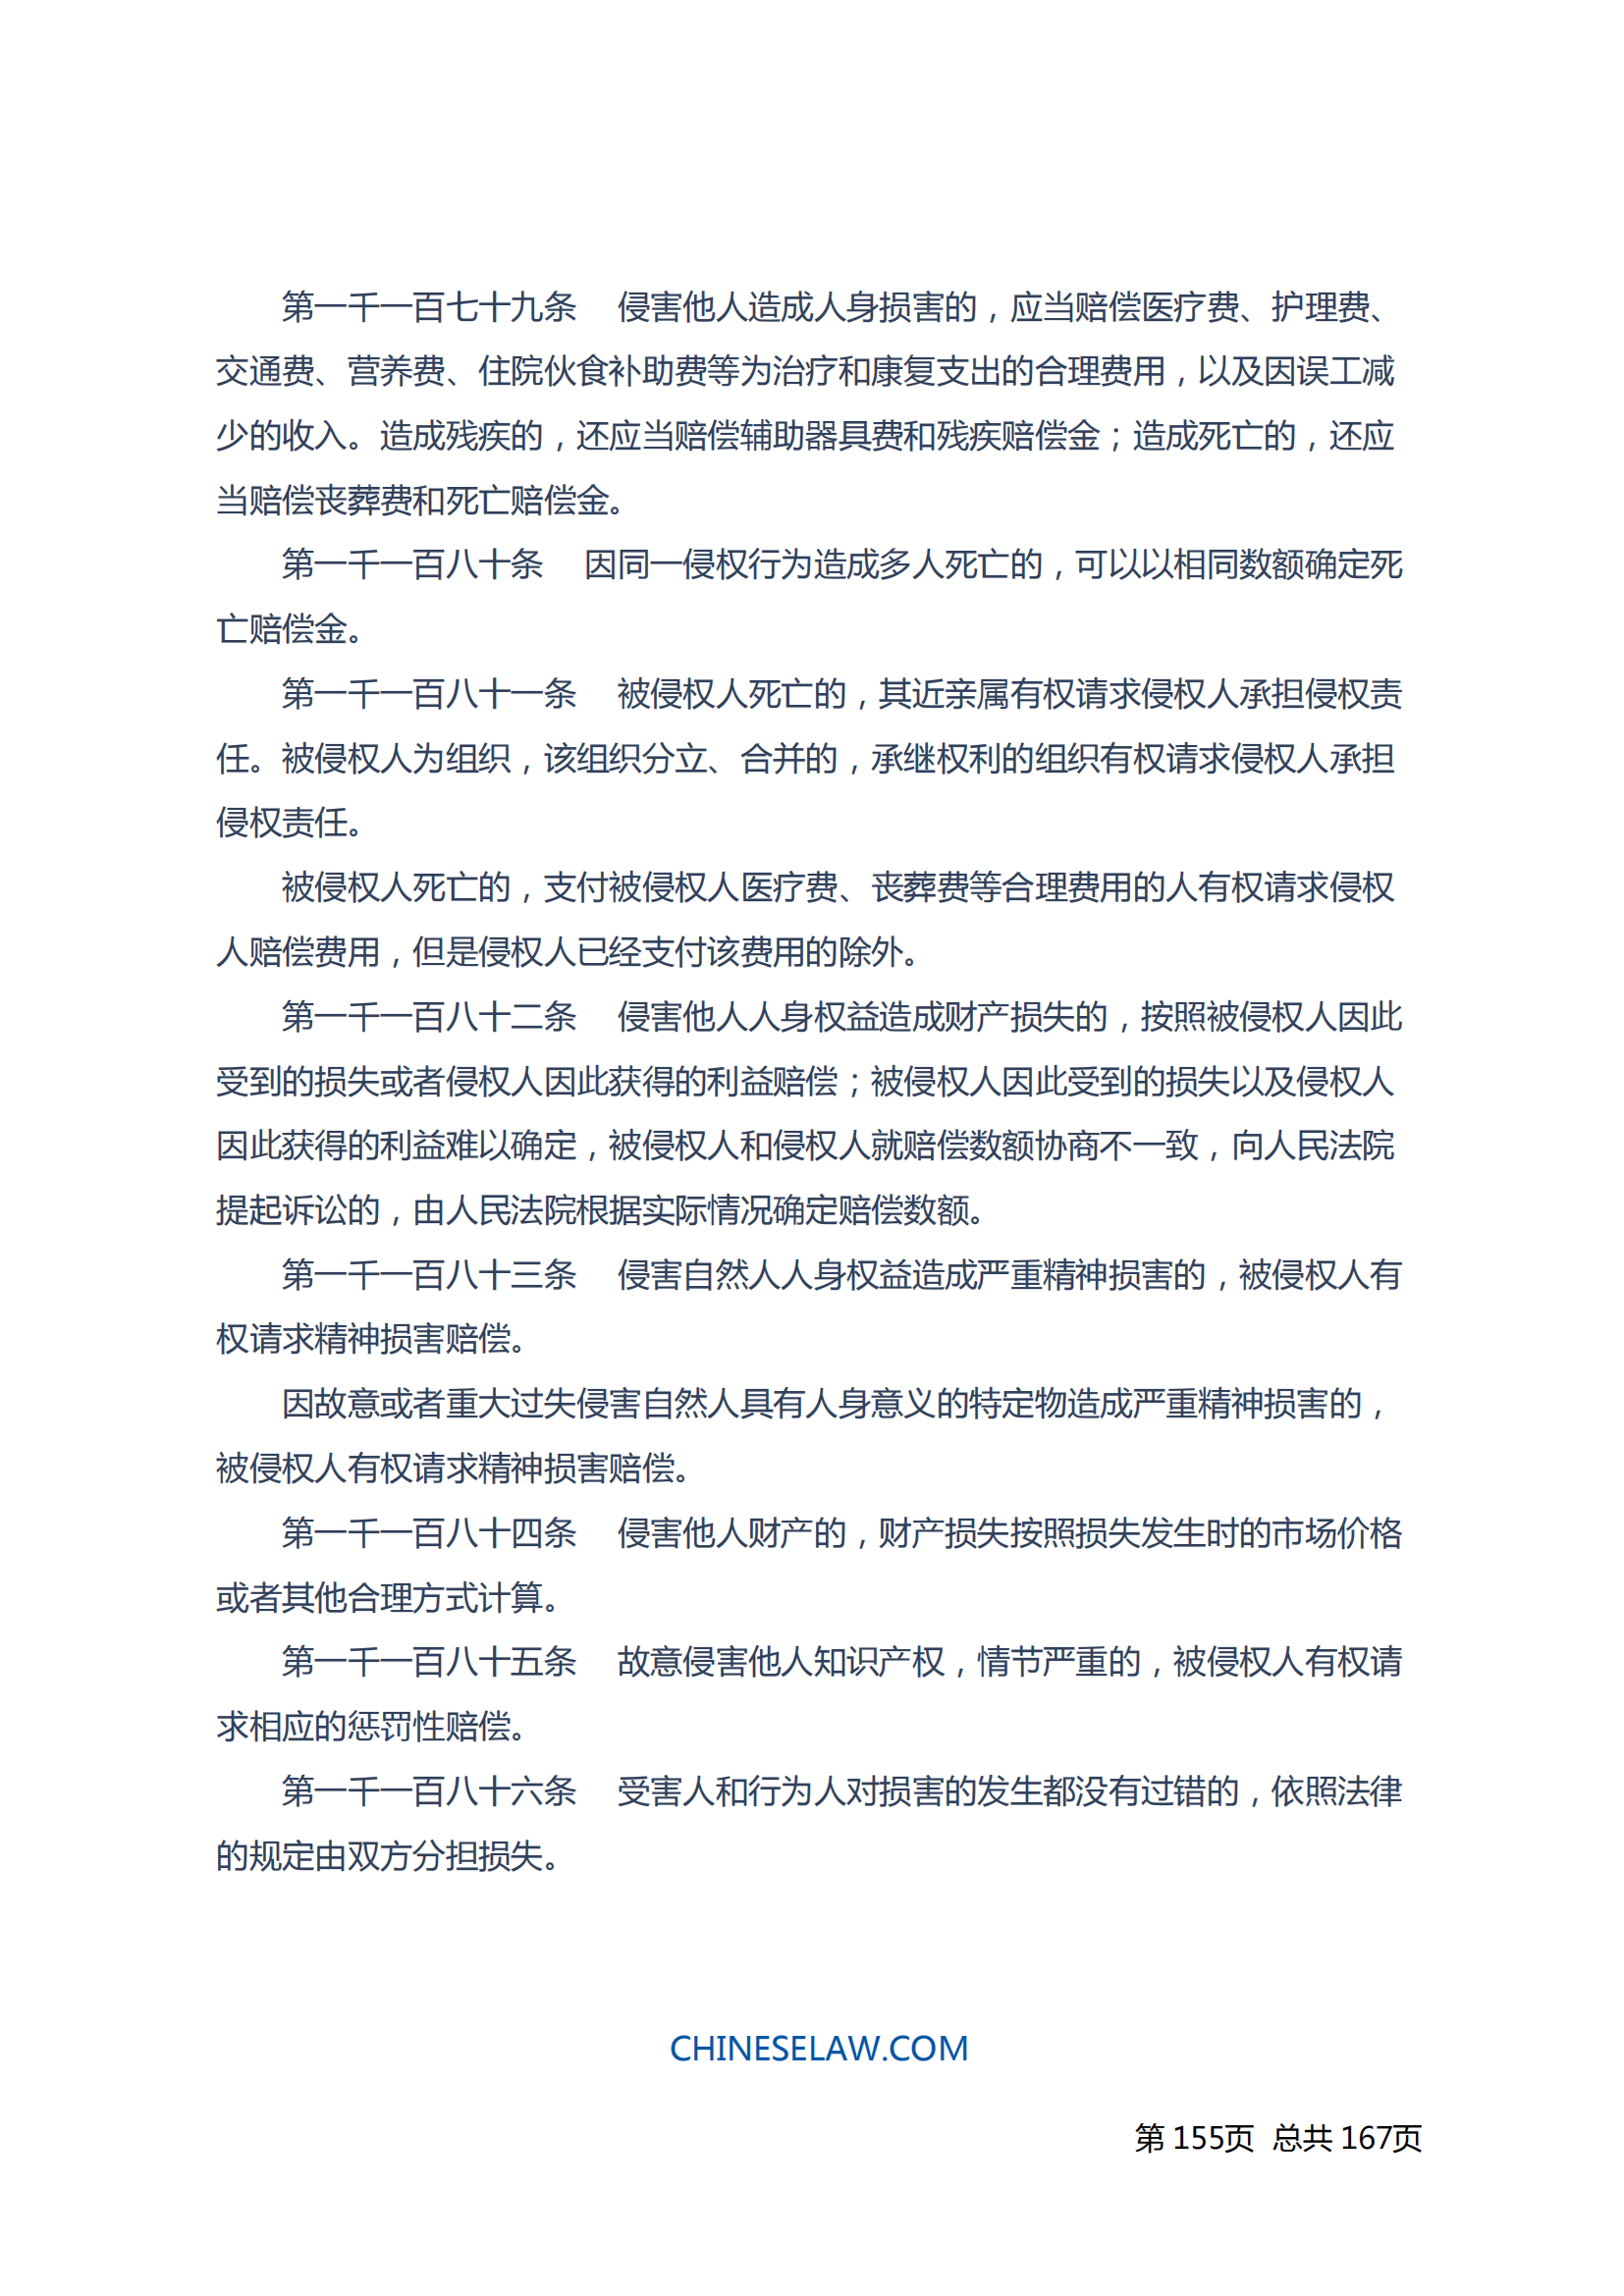 中华人民共和国民法典_154